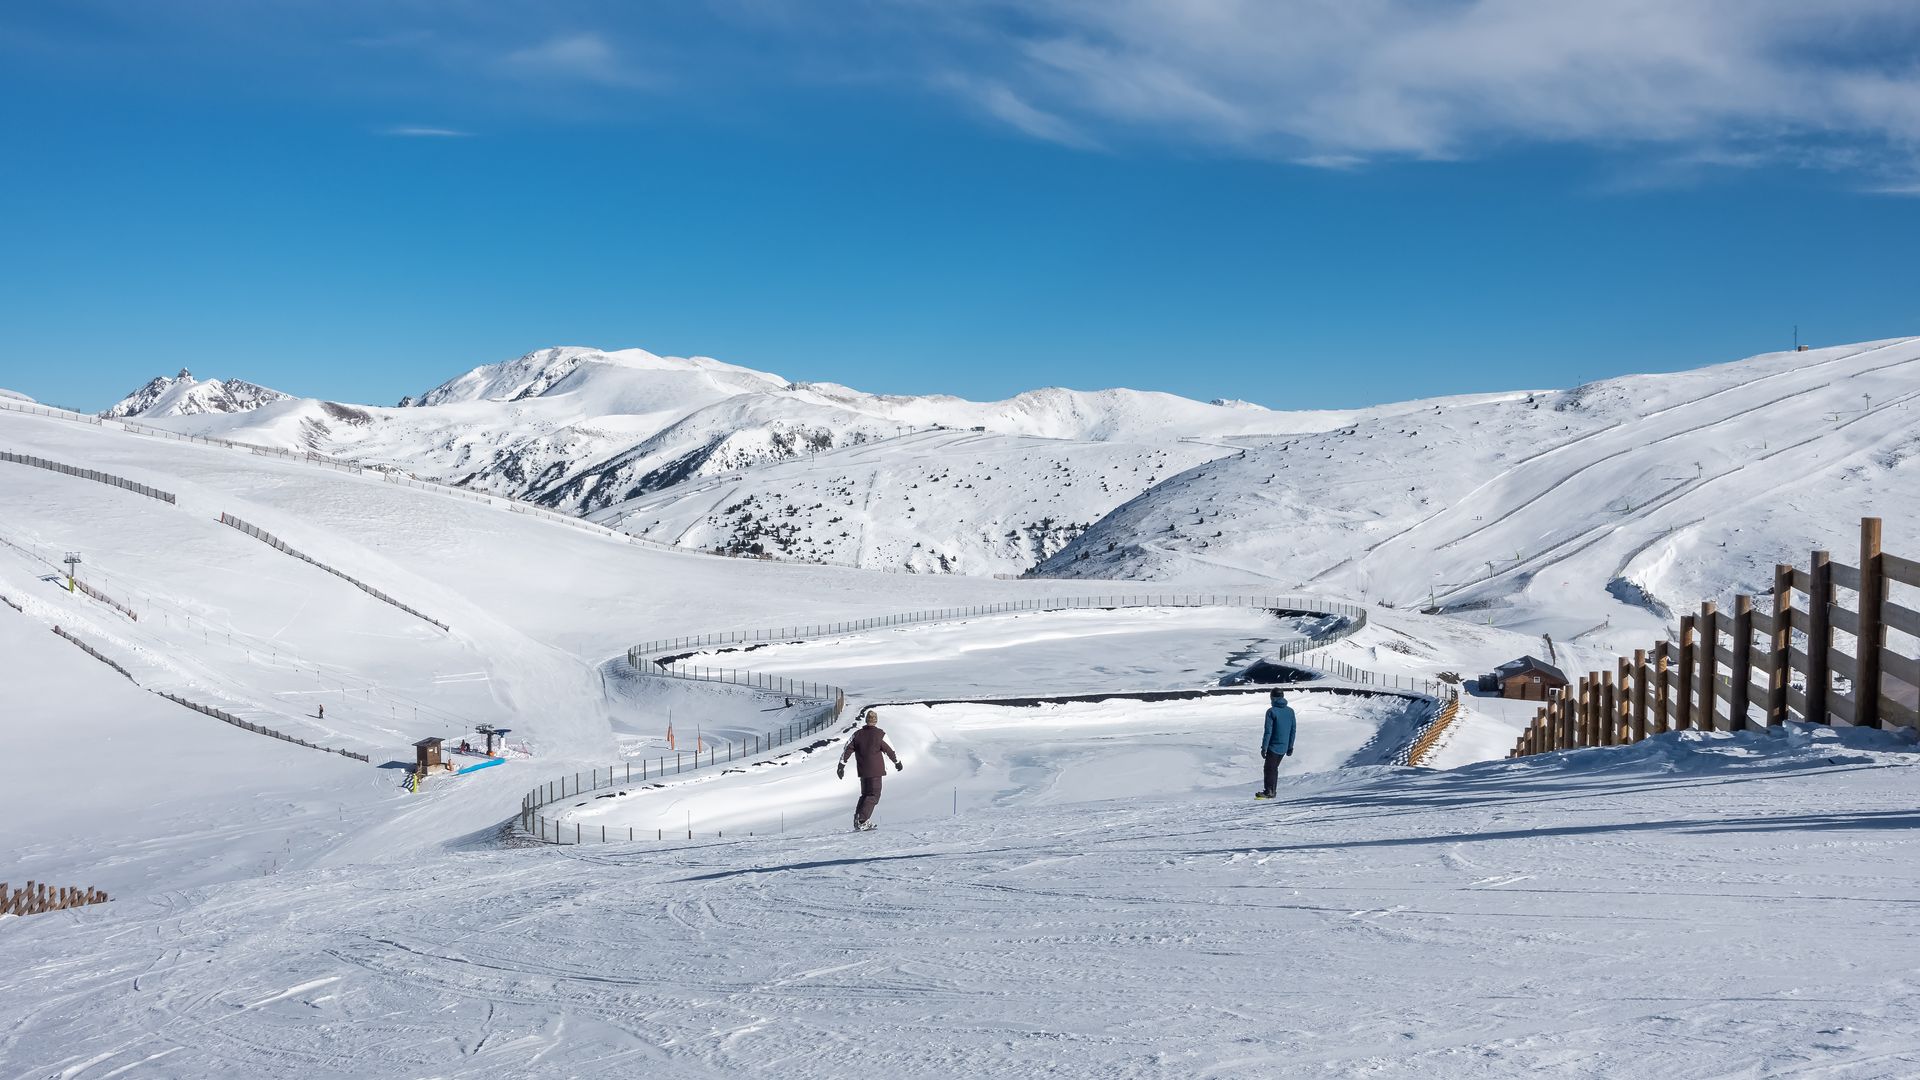 Vista panoramica desde una pista de esqui de Andorra